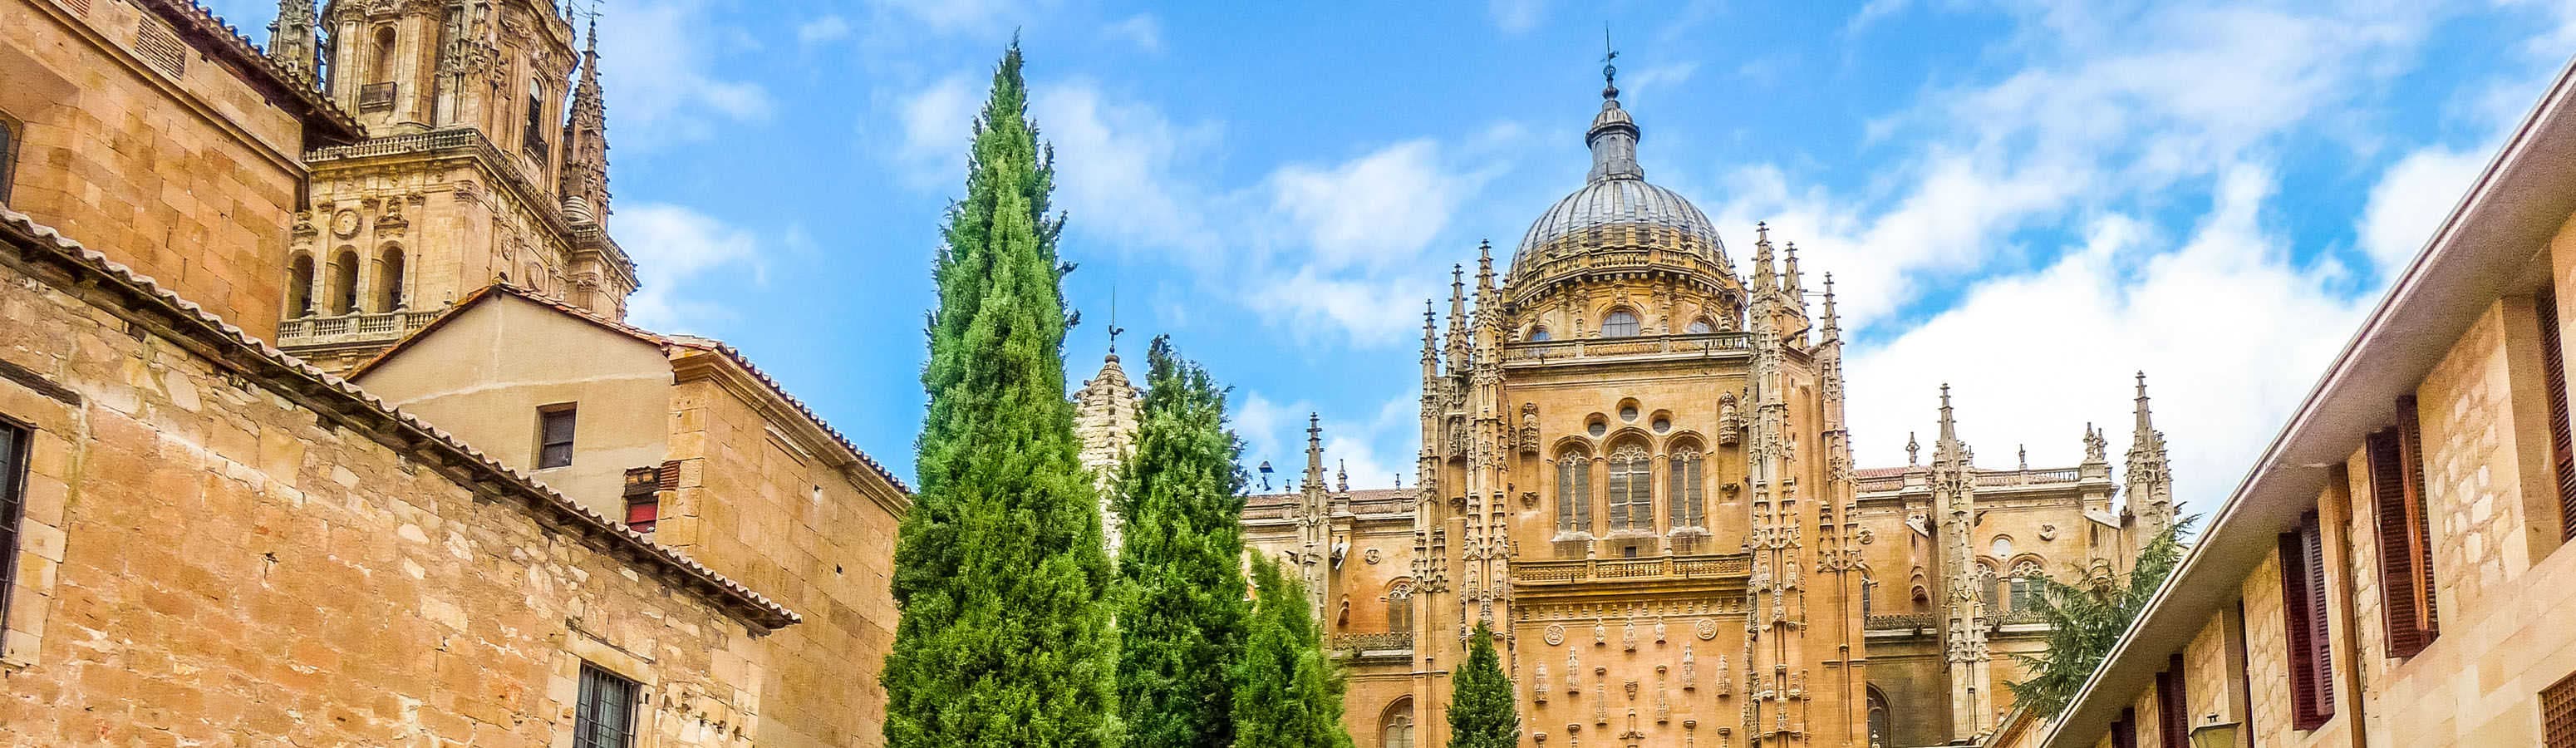 L'università più antica d'Europa si trova a Salamanca